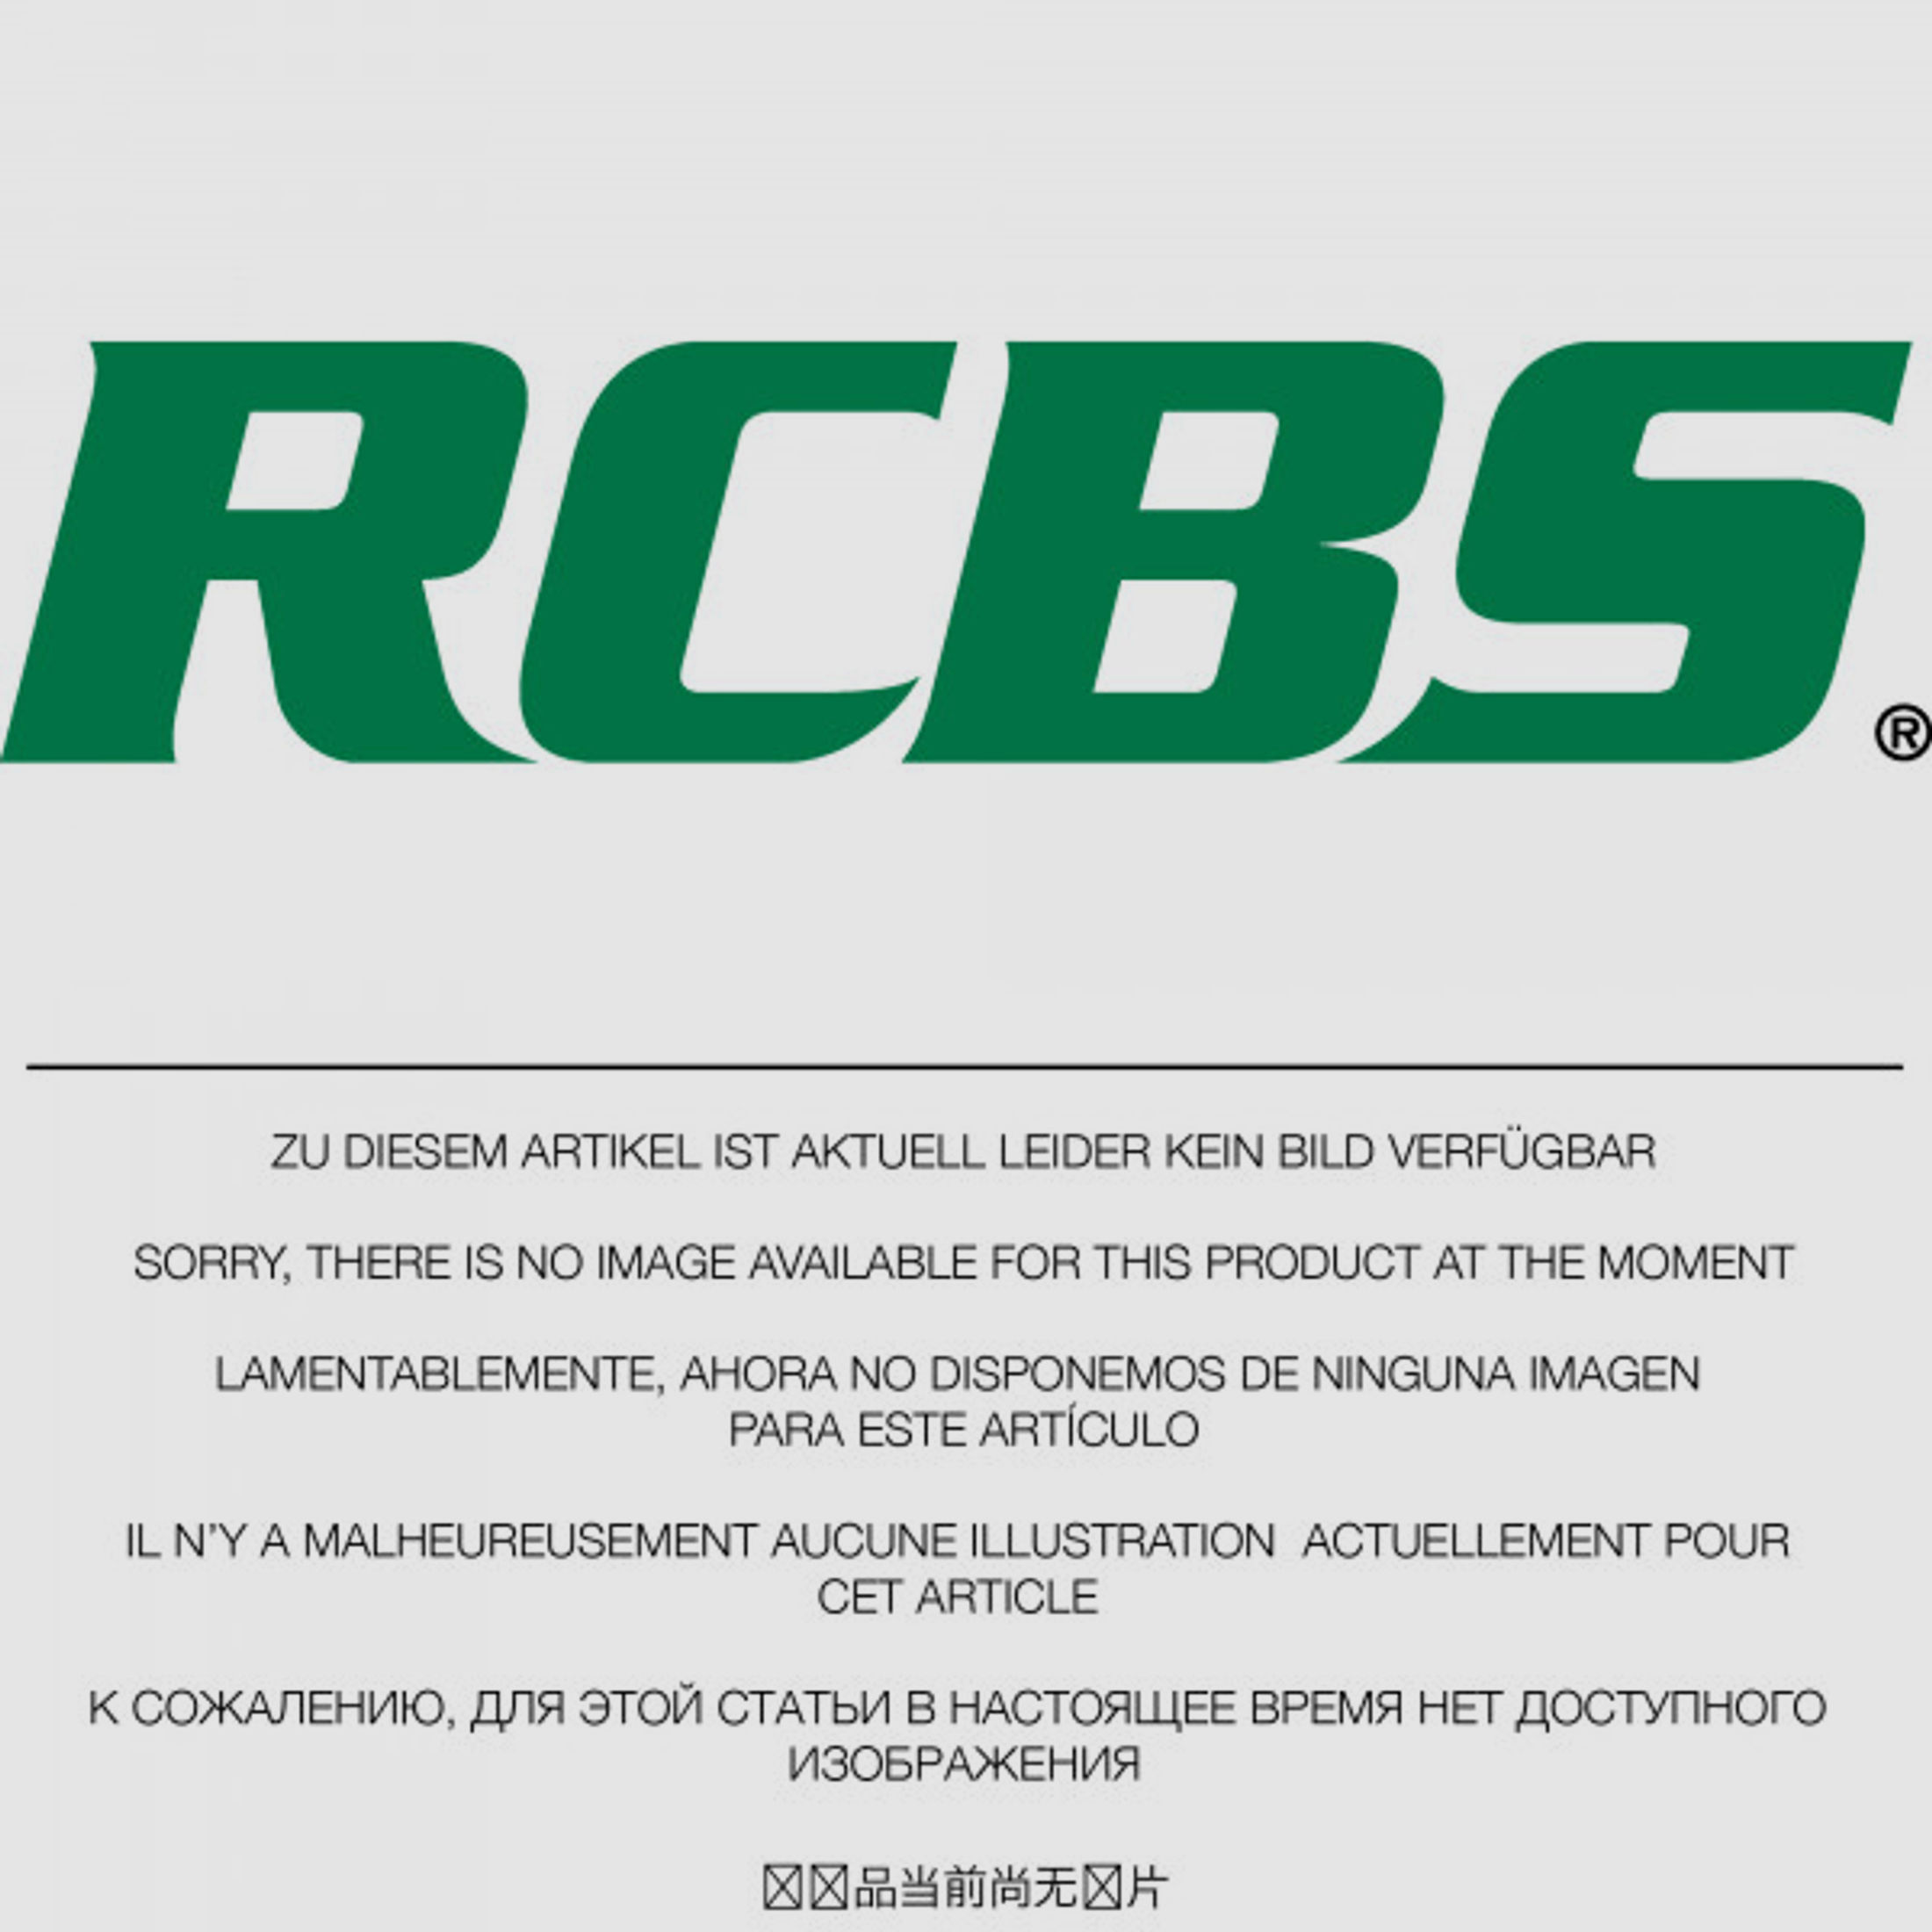 RCBS Lube-A-Matic Top Punch Geschoss Setzstempel Nr. 633 #85633